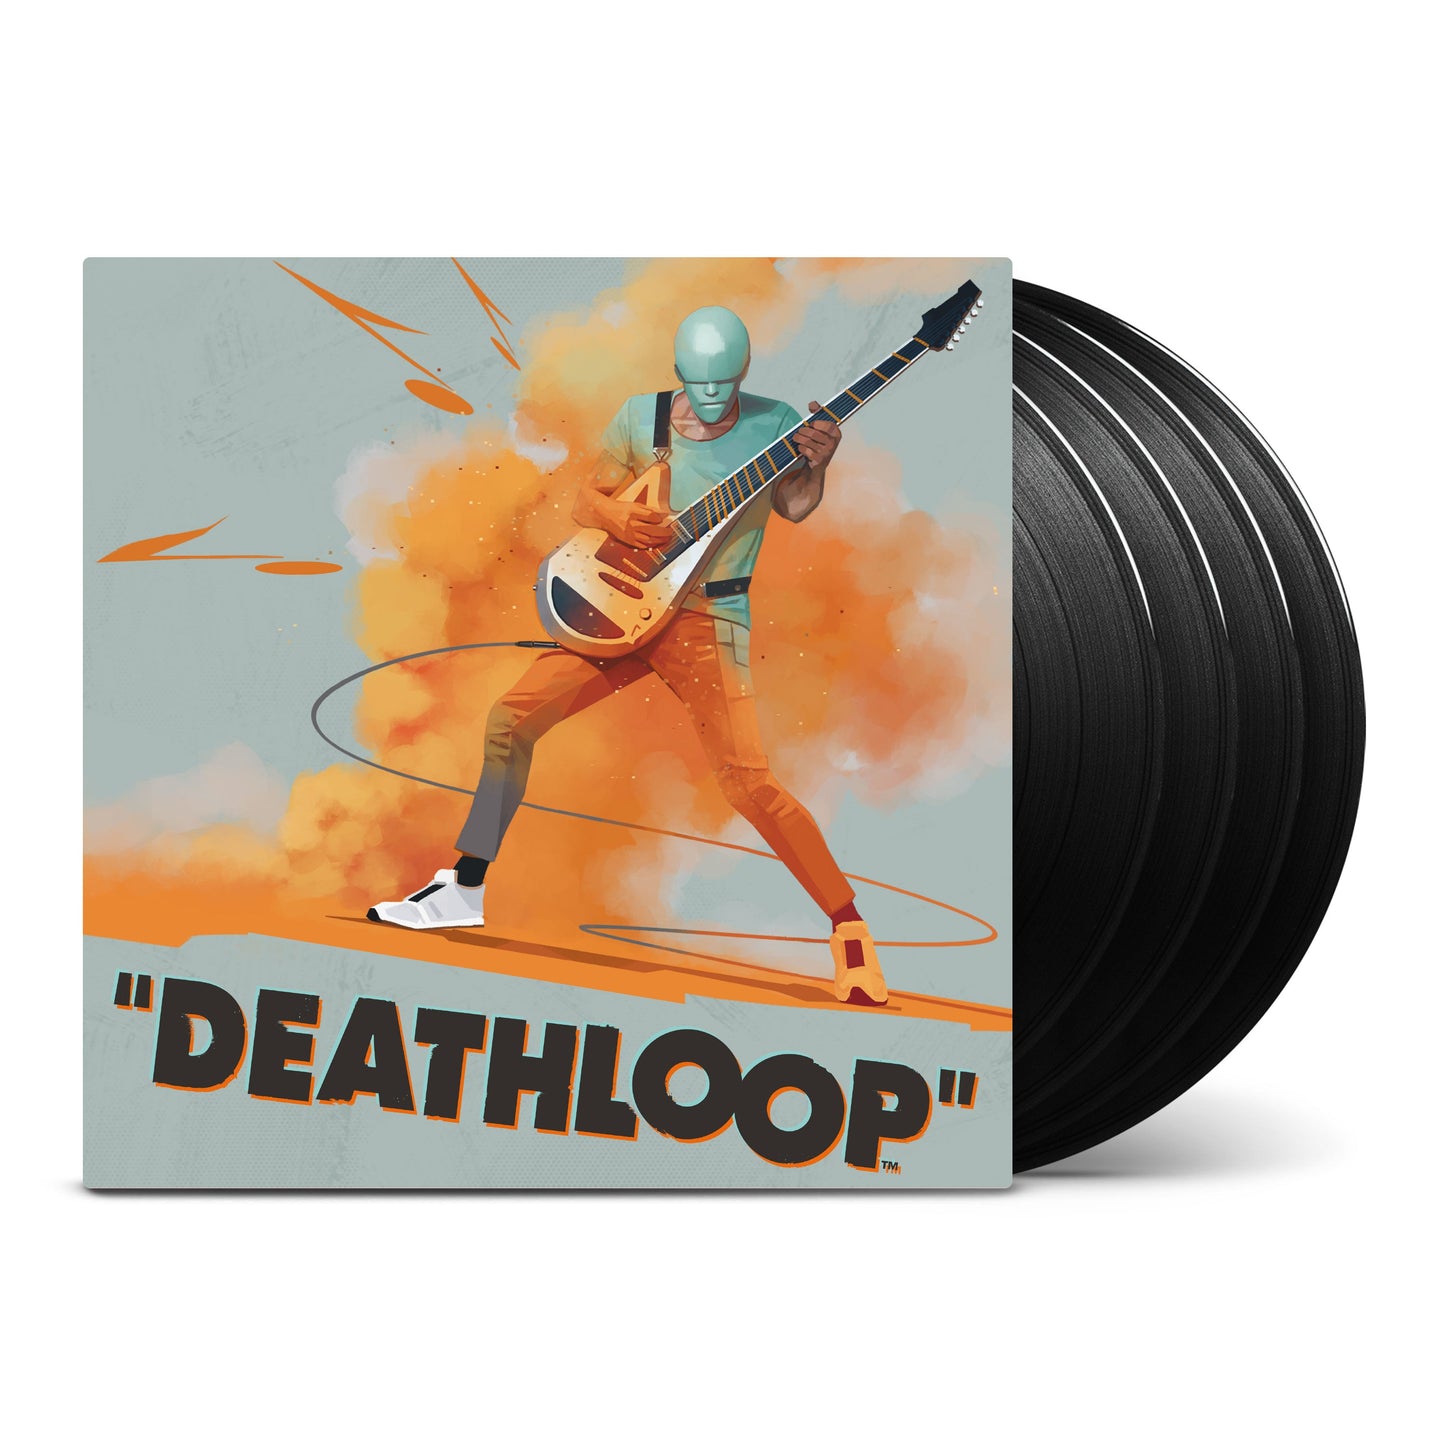 LMLP154 - Various Artists - Deathloop (Original Soundtrack Deluxe Box Set)